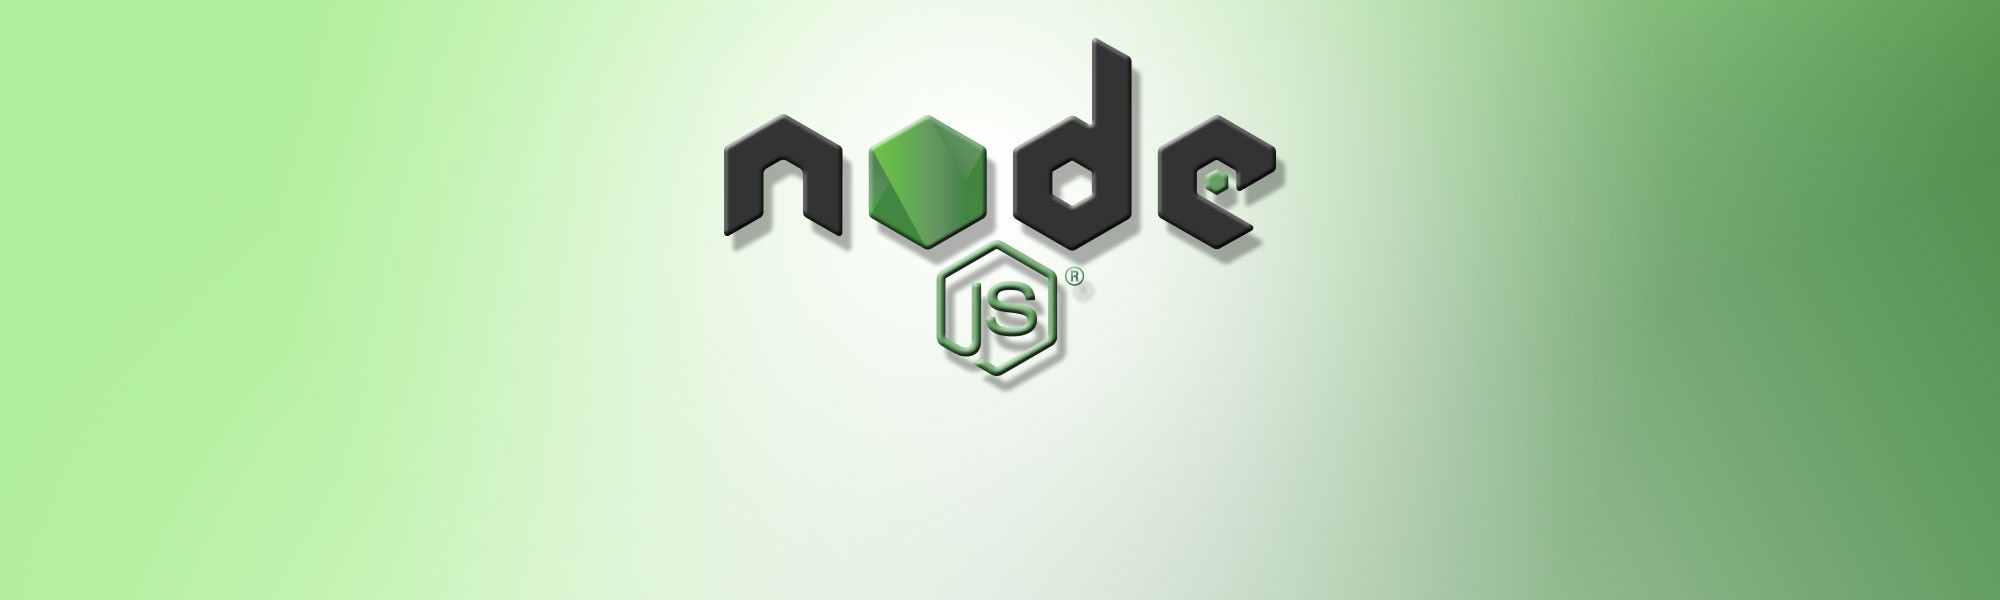 Node.js Developers